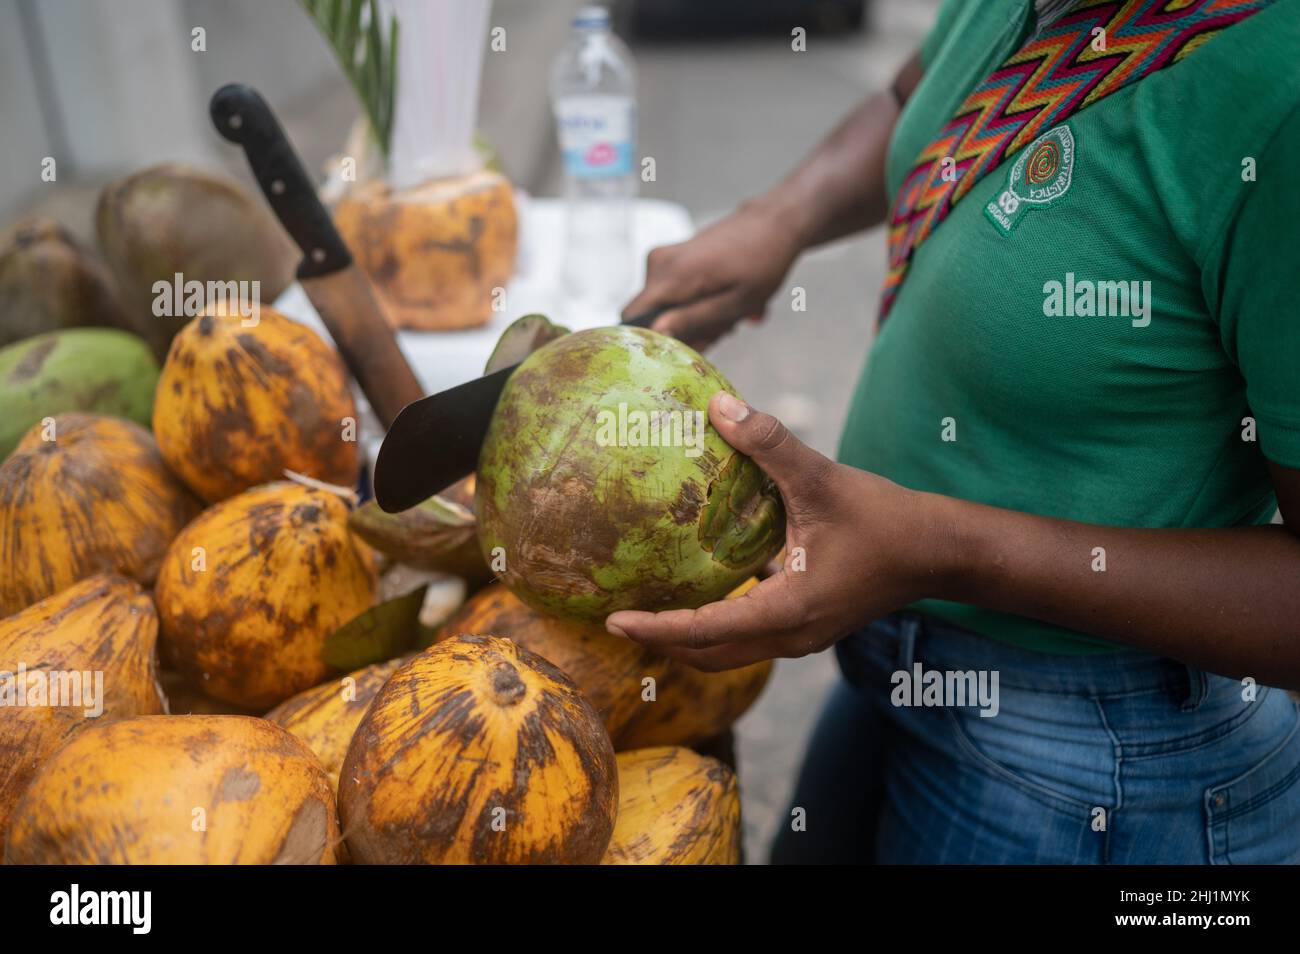 Coconut-Straßenverkäufer, der während der Pandemie Covid-19 in Kolumbien im historischen Gebiet von Cartagena de Indias tätig war Stockfoto